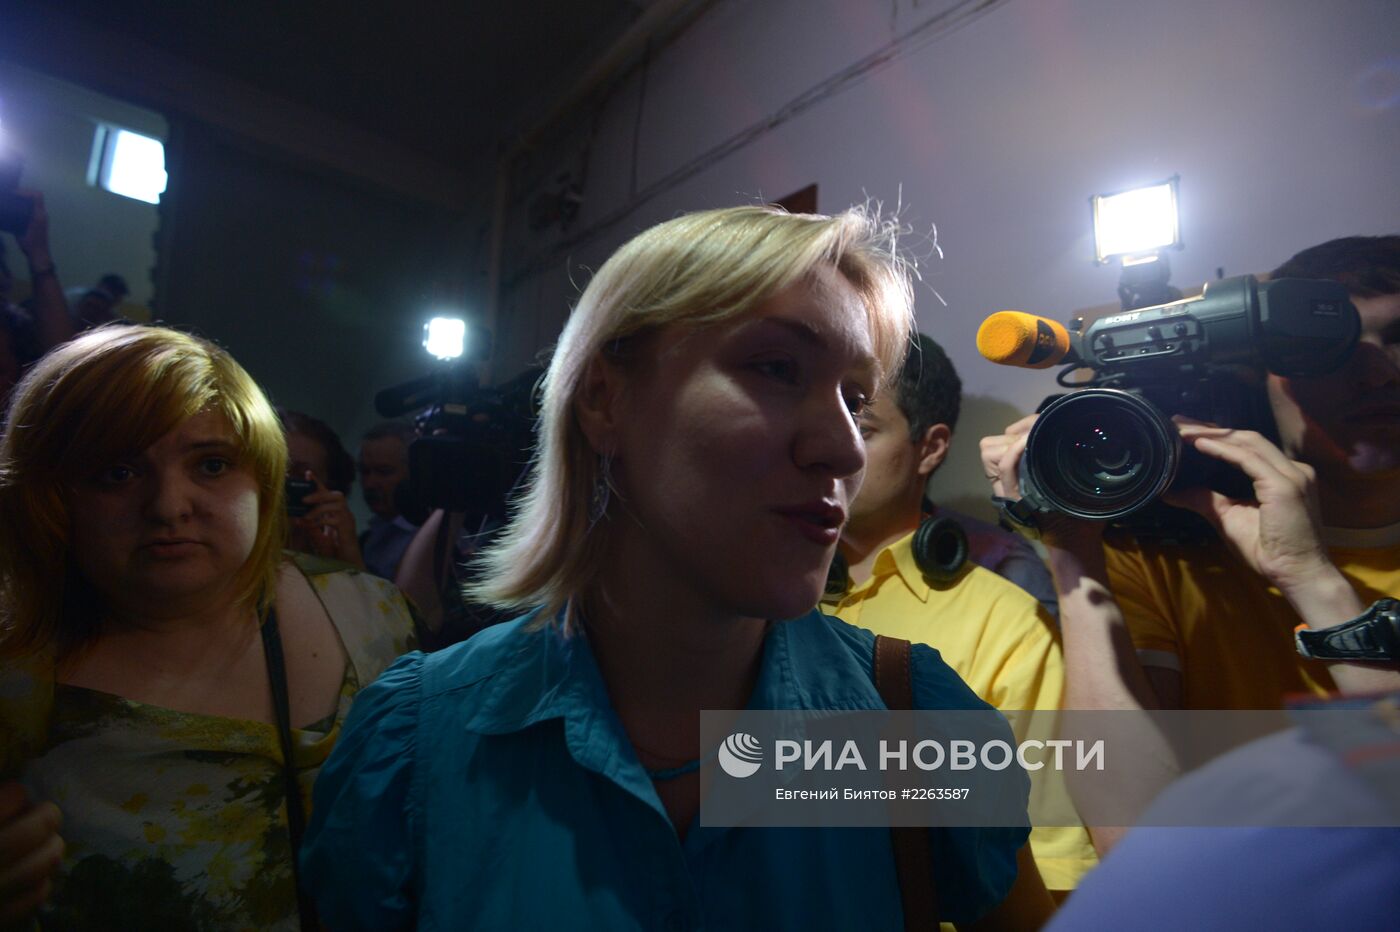 Сторонники Навального задержаны в Москве